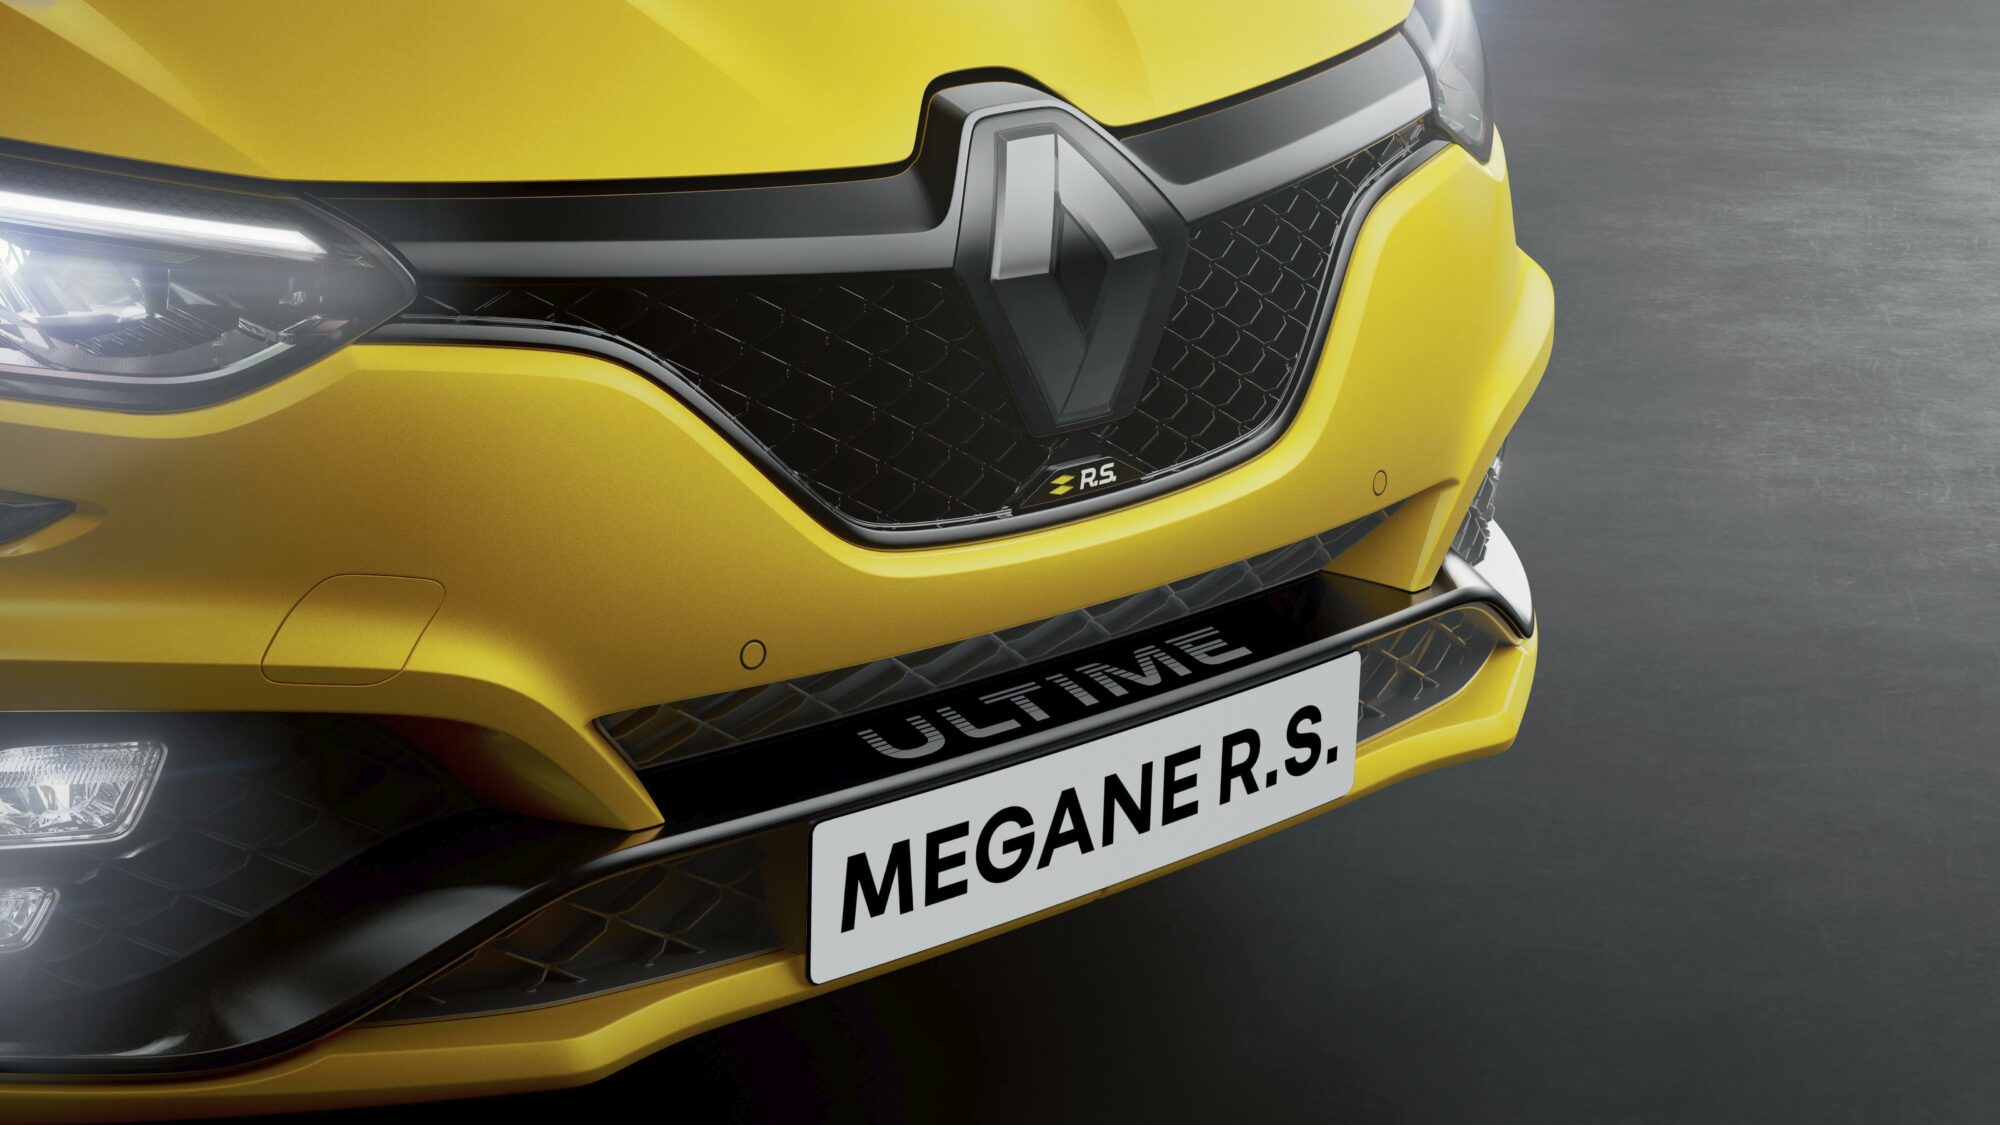 2023 - Renault Megane R.S. Ultime